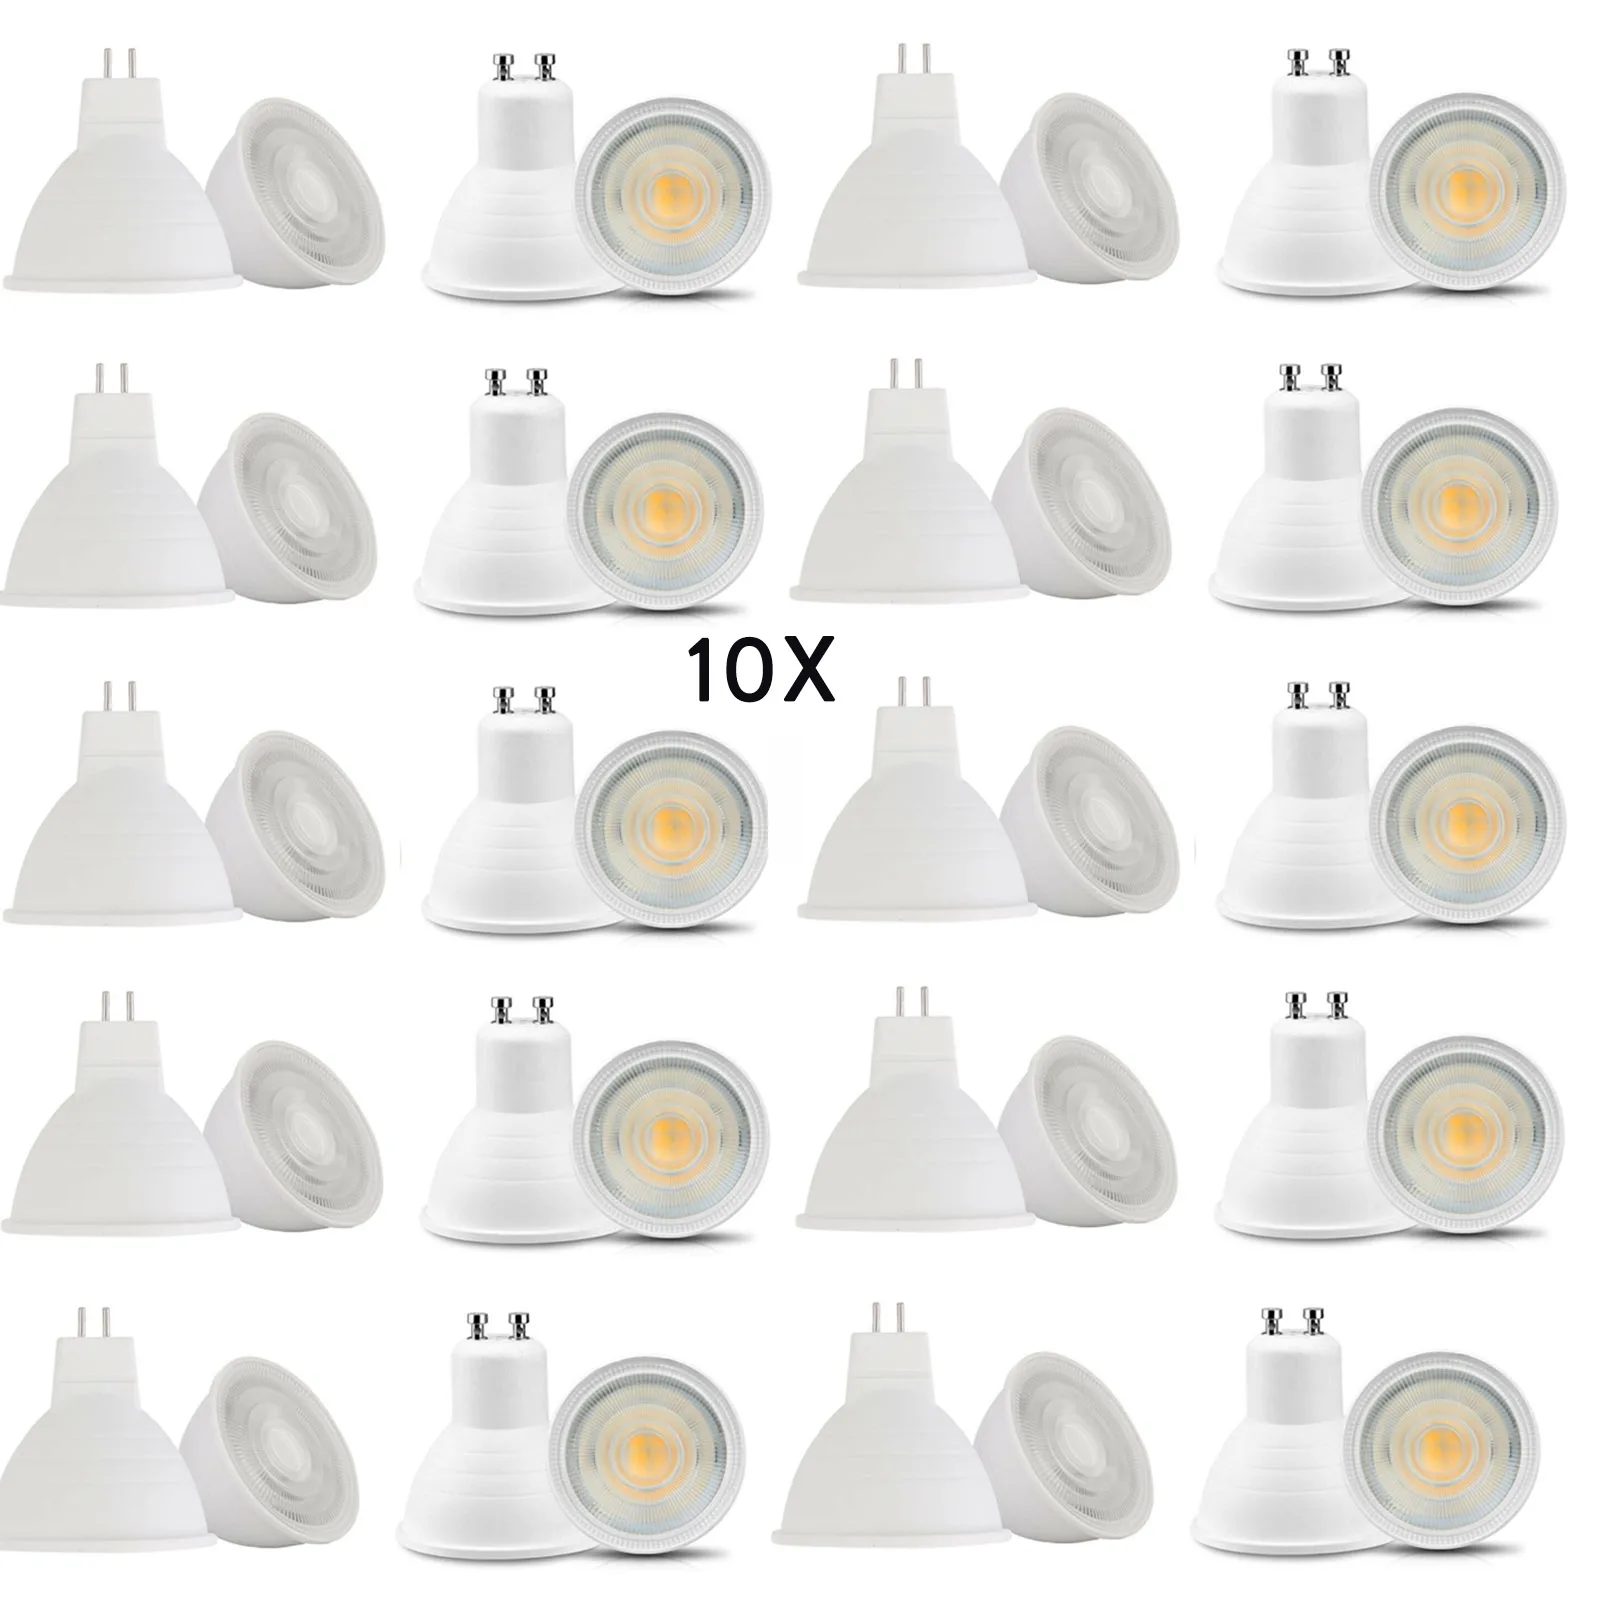 10x Dimmable LED Lamp GU10 LED Bulb Spotlight 220V MR16 GU5.